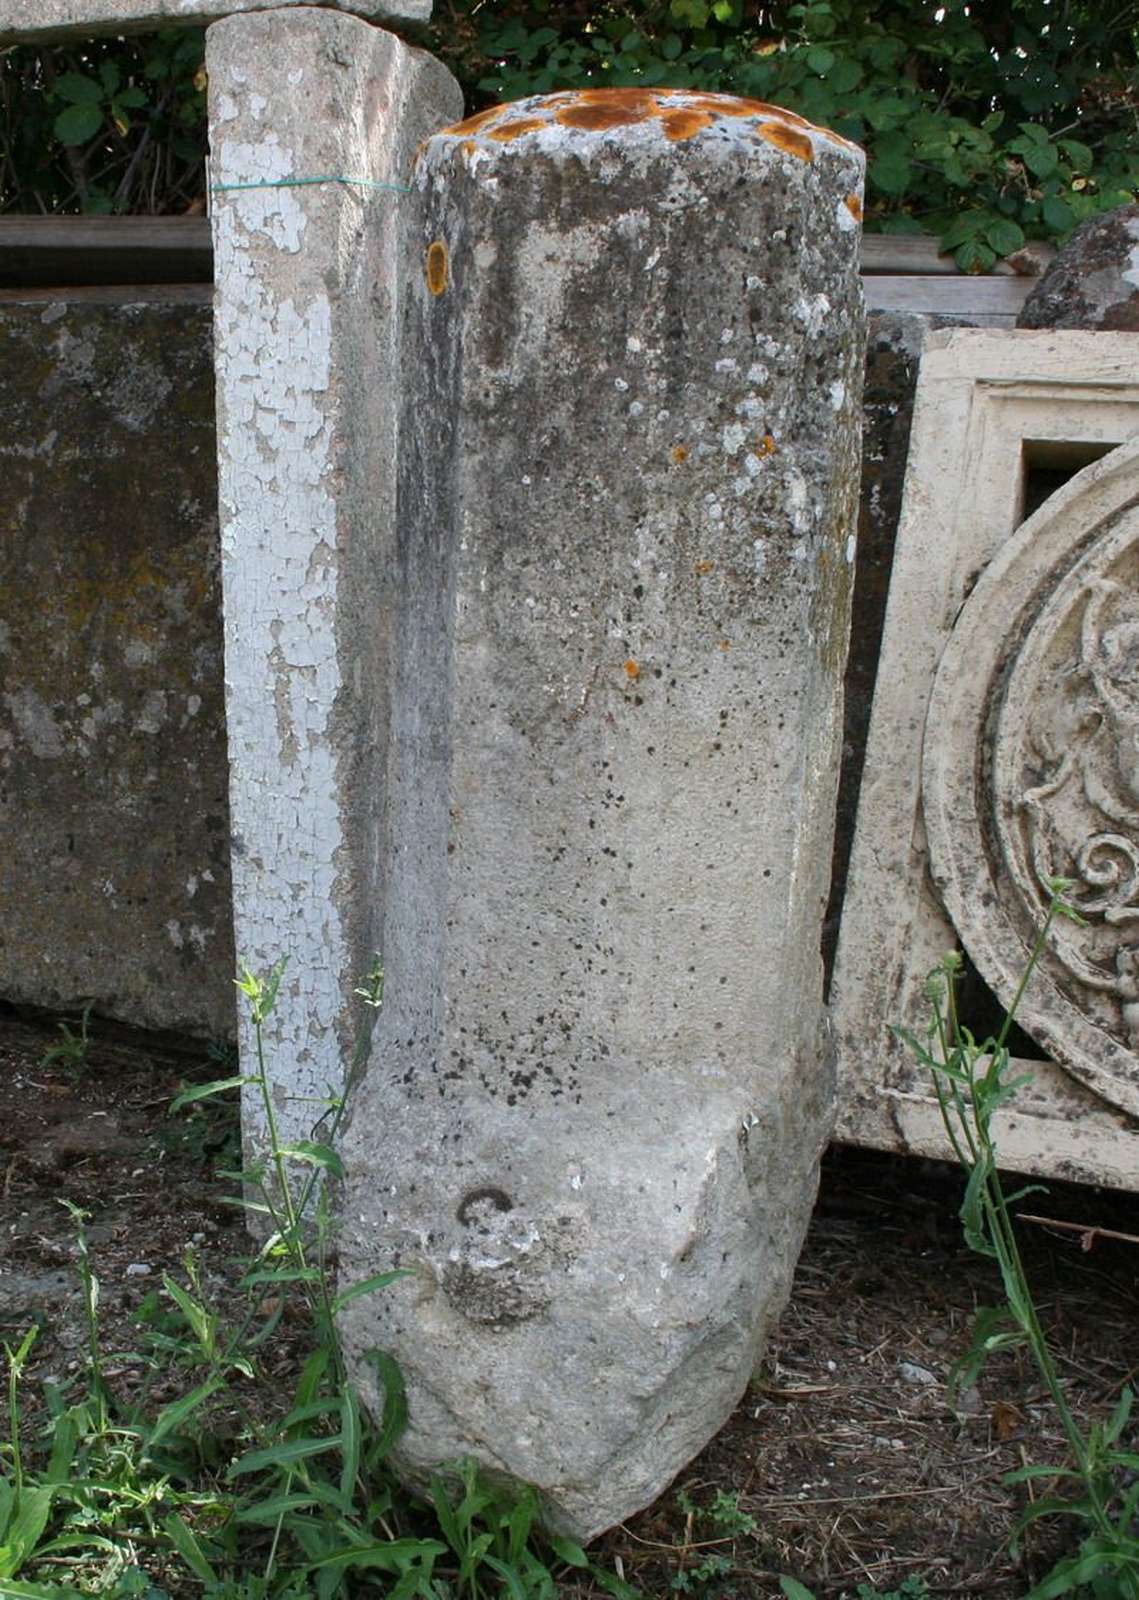 Colonna in pietra - Colonne antiche - Architettura - Prodotti - Antichità Fiorillo